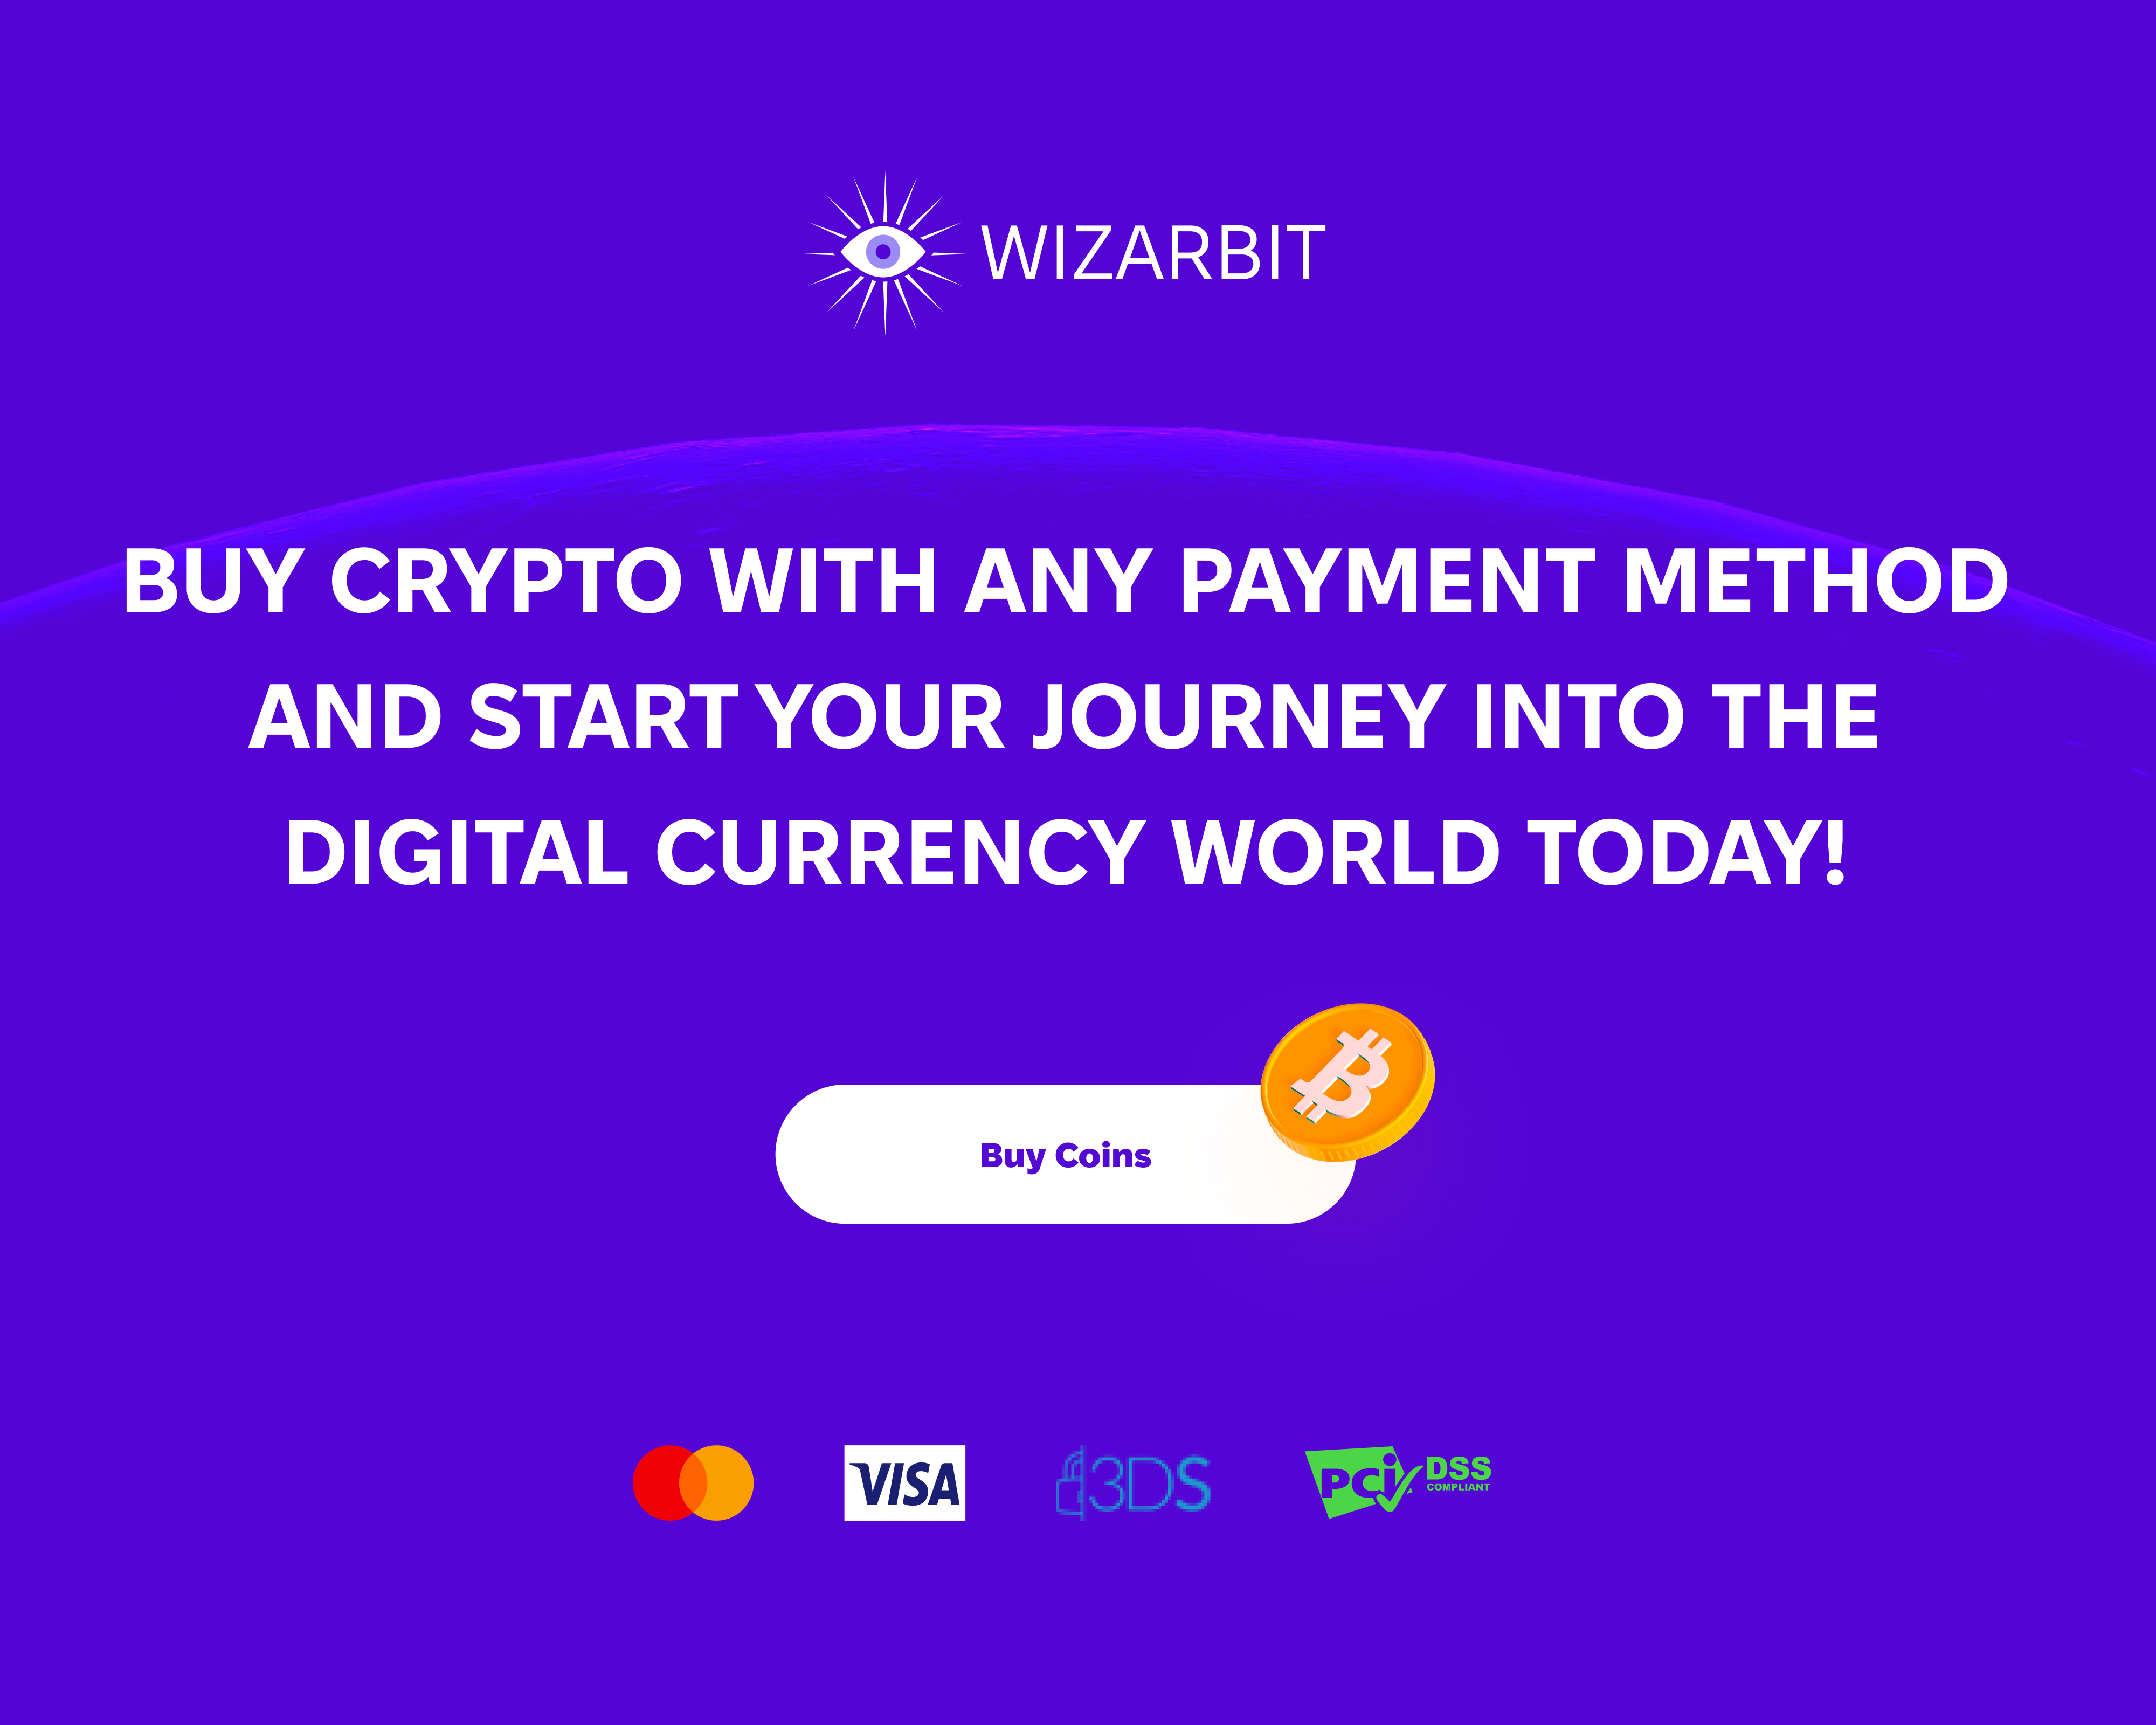 Wizarbit-anmeldelse: Accelererede kryptovalutaudvekslinger, forbedret sikkerhed | Live Bitcoin nyheder